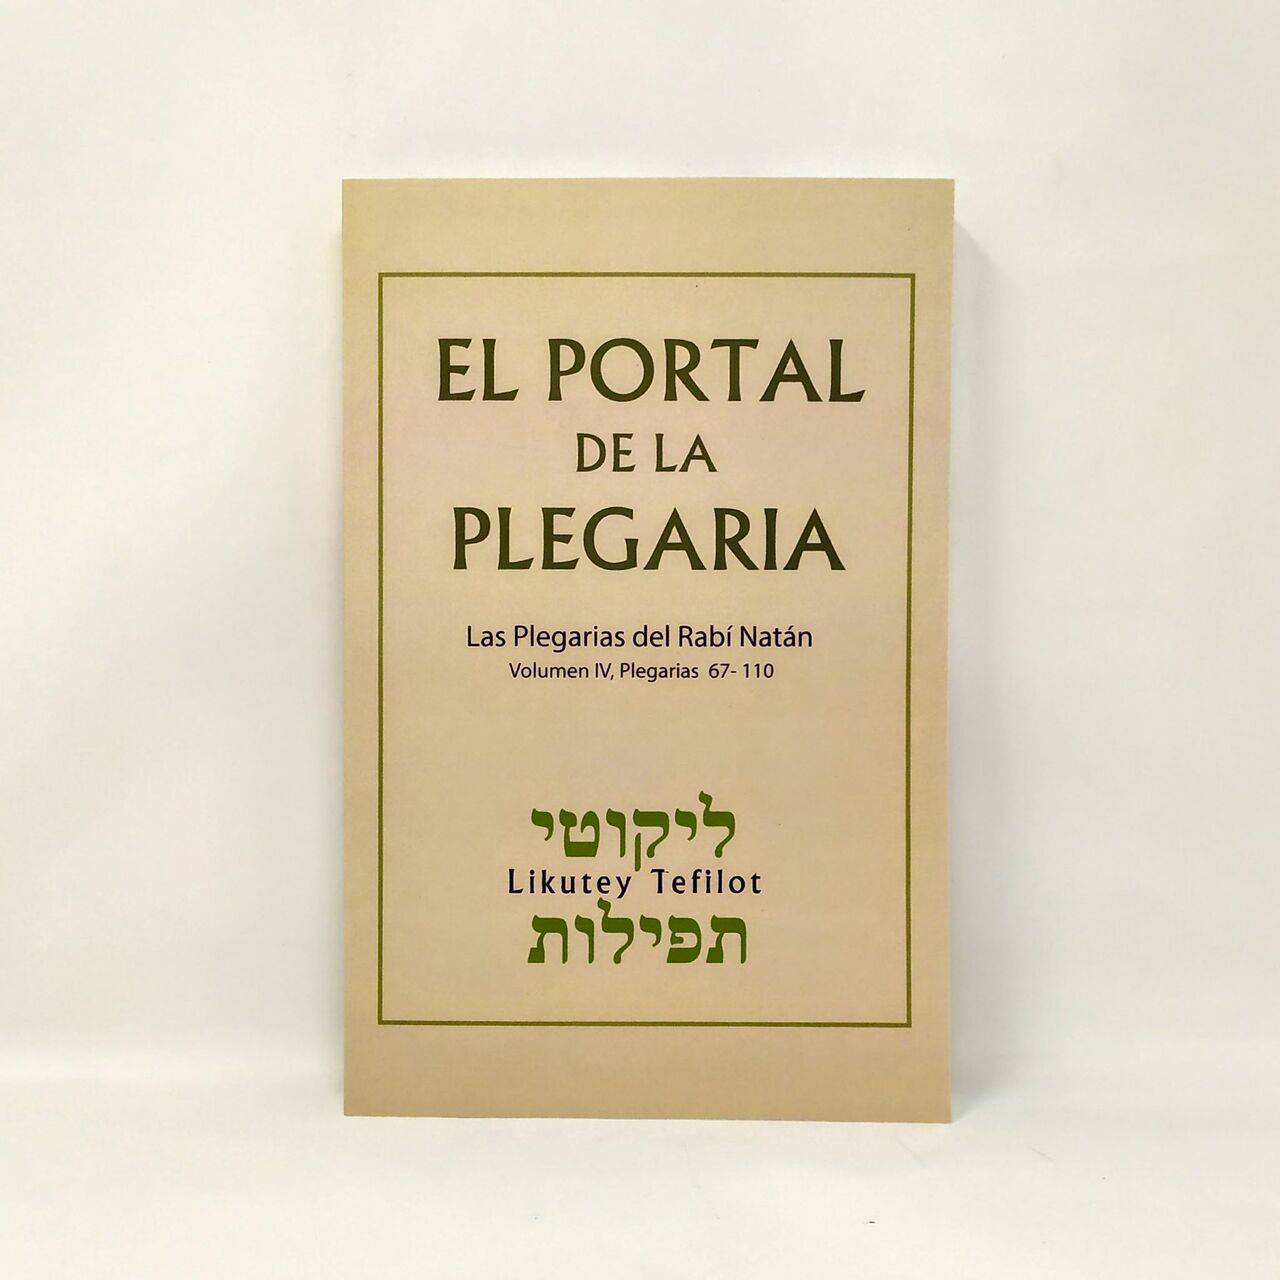 El portal de la plegaria vol. IV, del 67-110 - Libreria Jerusalem Centro